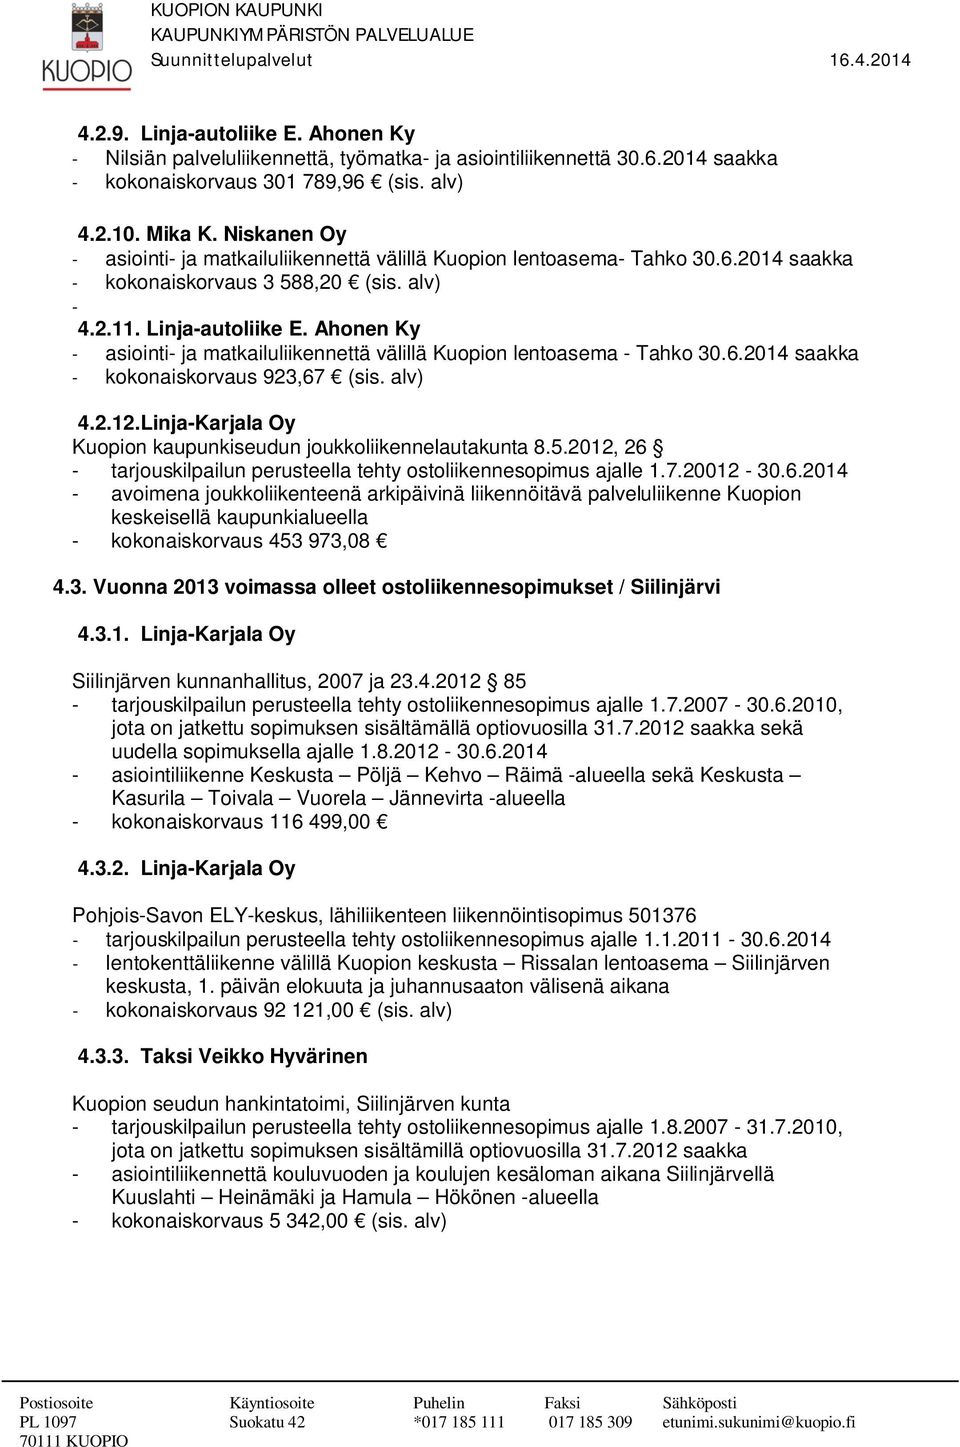 Ahonen Ky - asiointi- ja matkailuliikennettä välillä Kuopion lentoasema - Tahko 30.6.2014 saakka - kokonaiskorvaus 923,67 (sis. alv) 4.2.12.